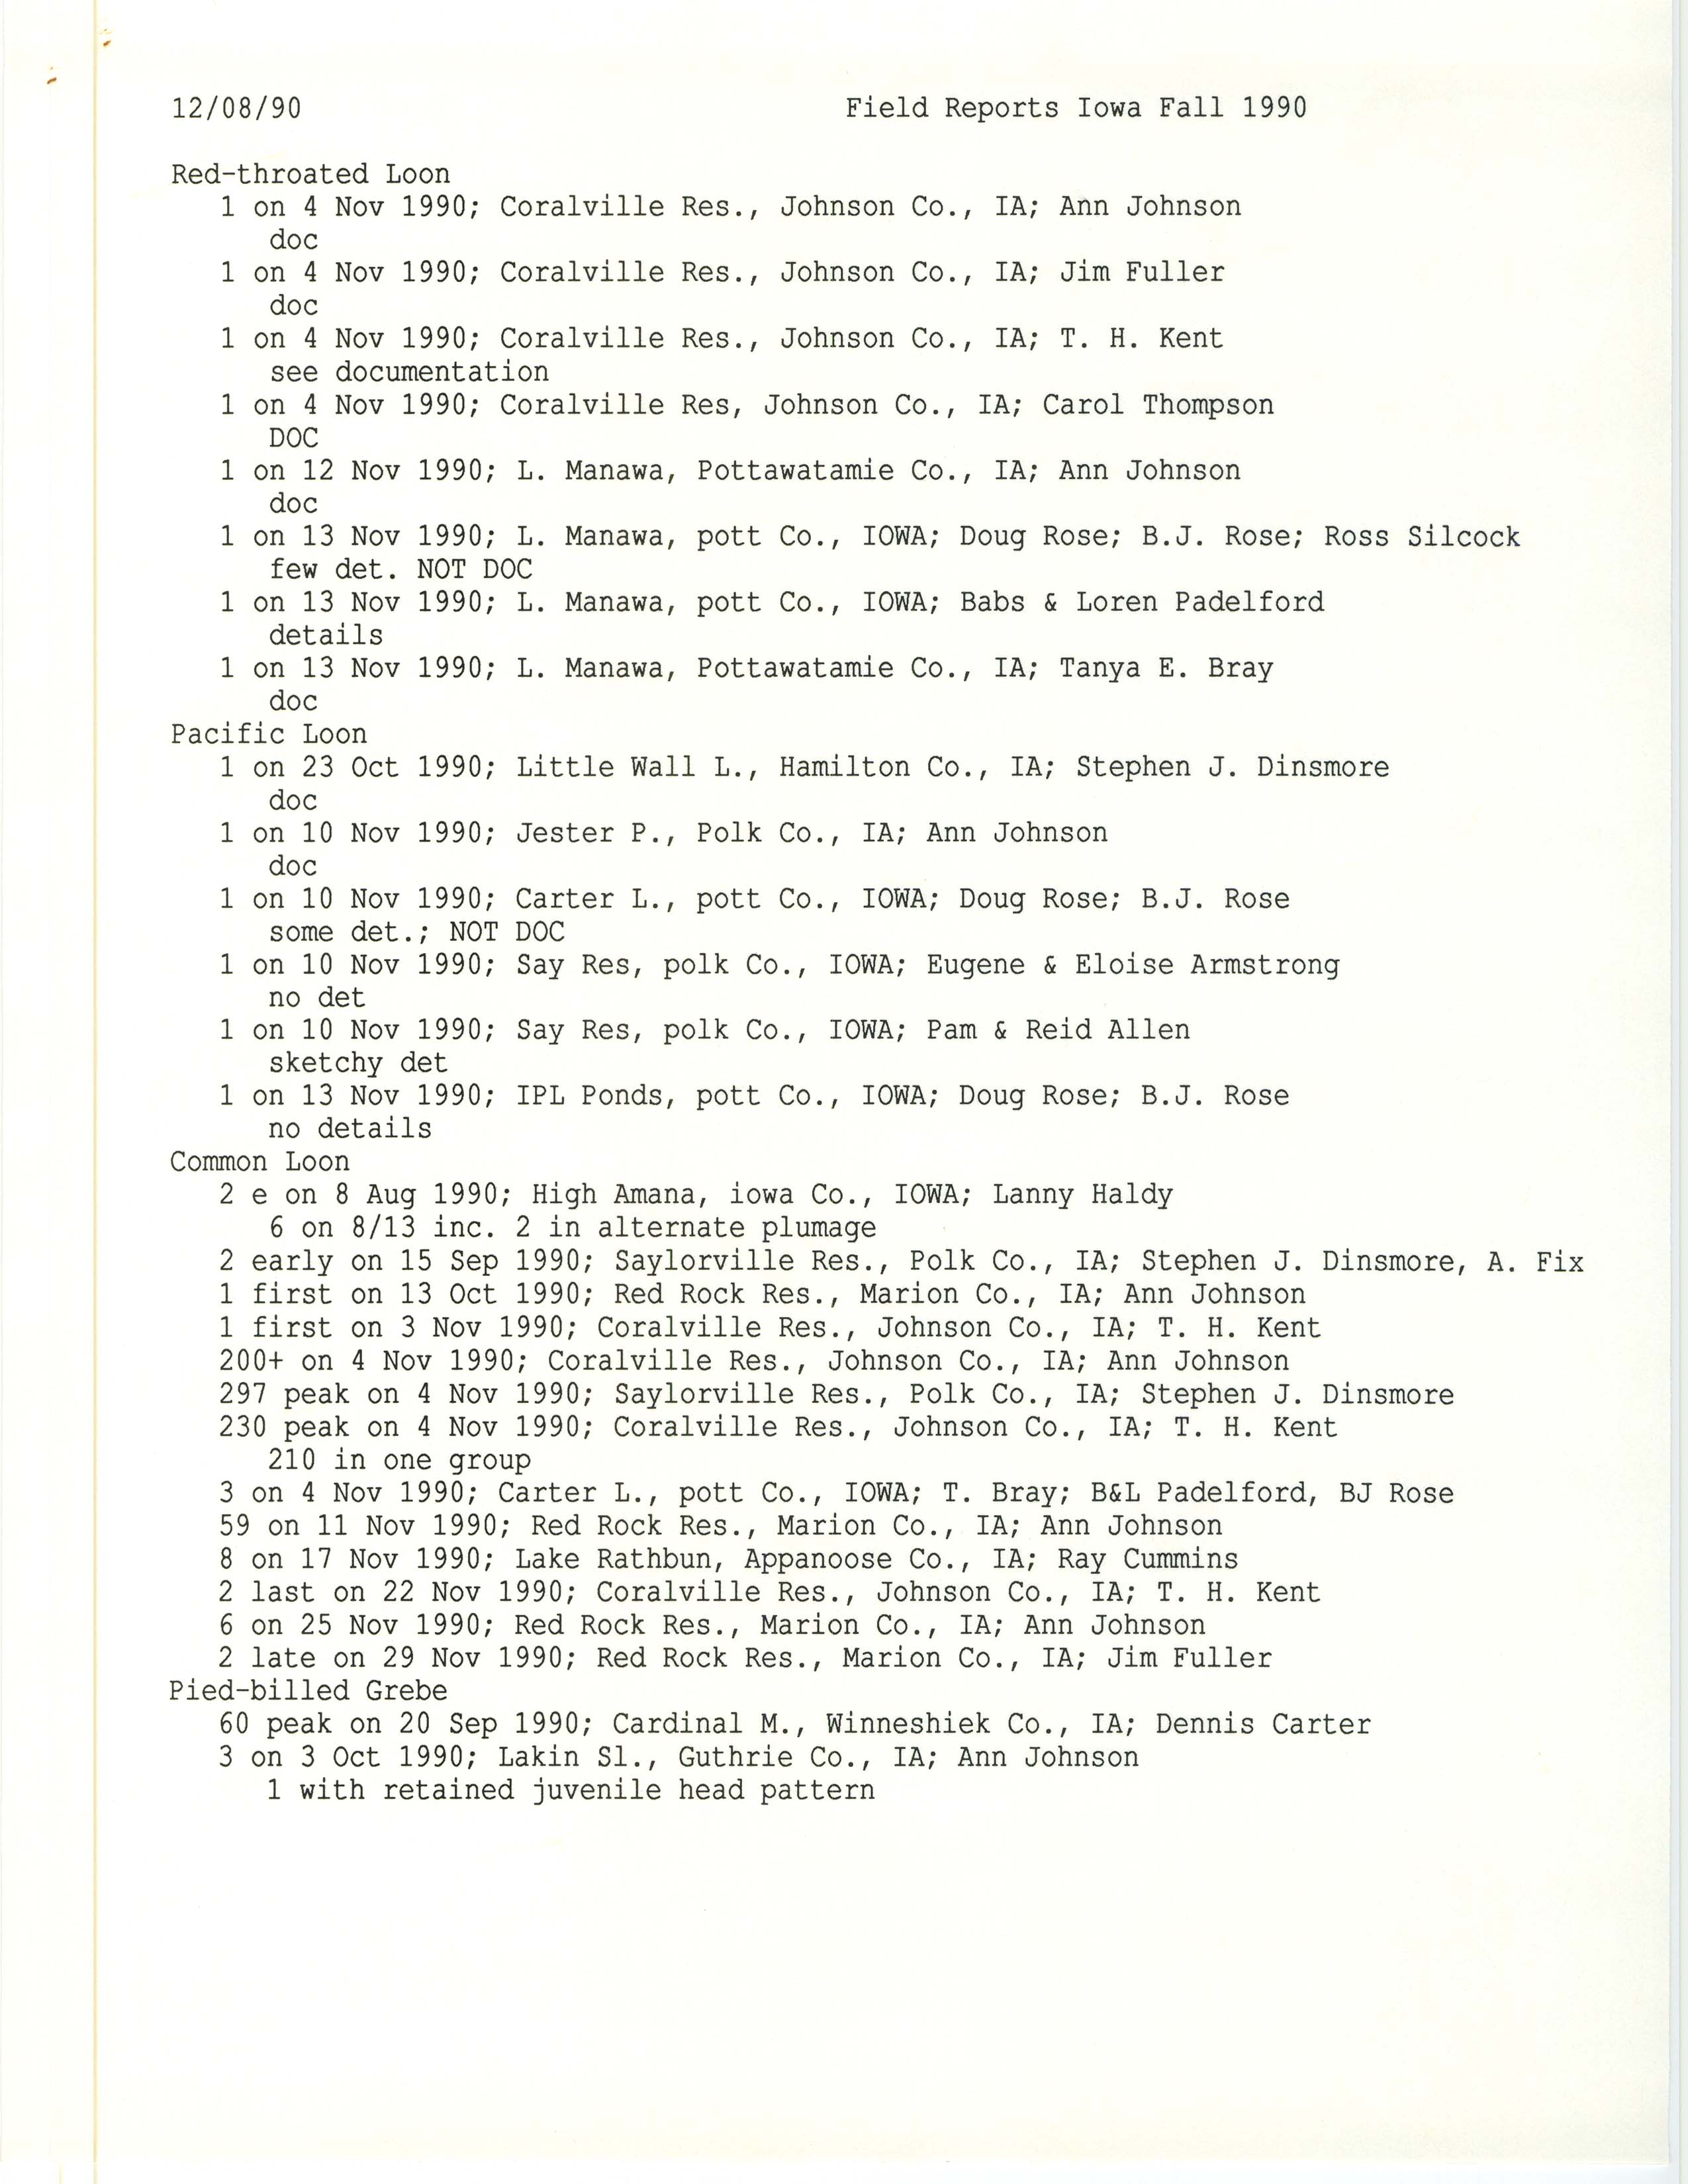 Field reports Iowa fall 1990